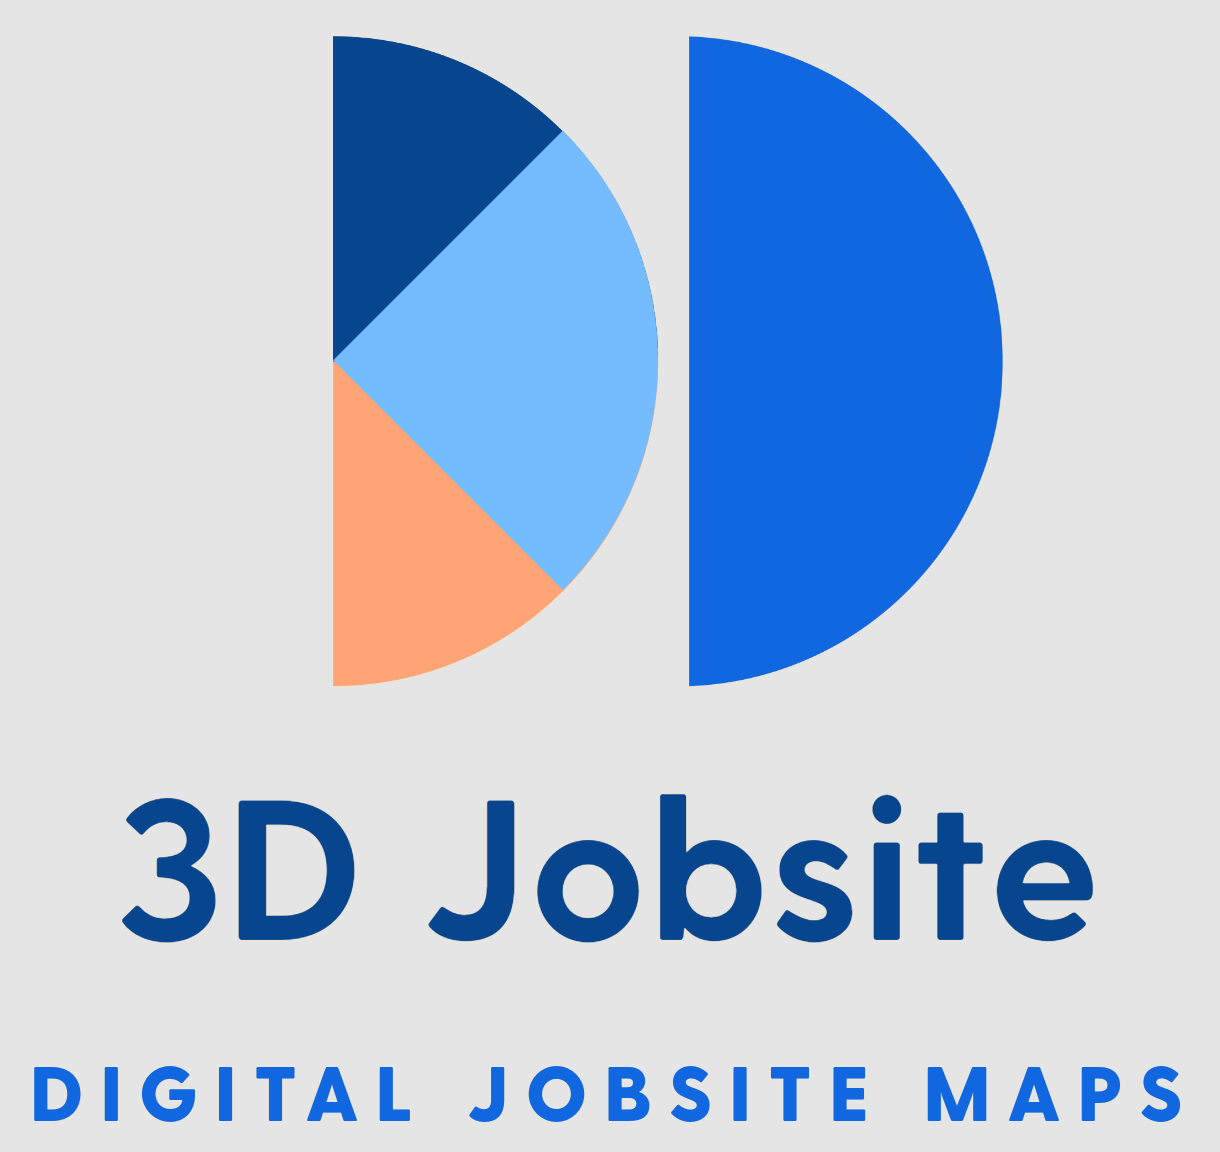 3D Jobsites